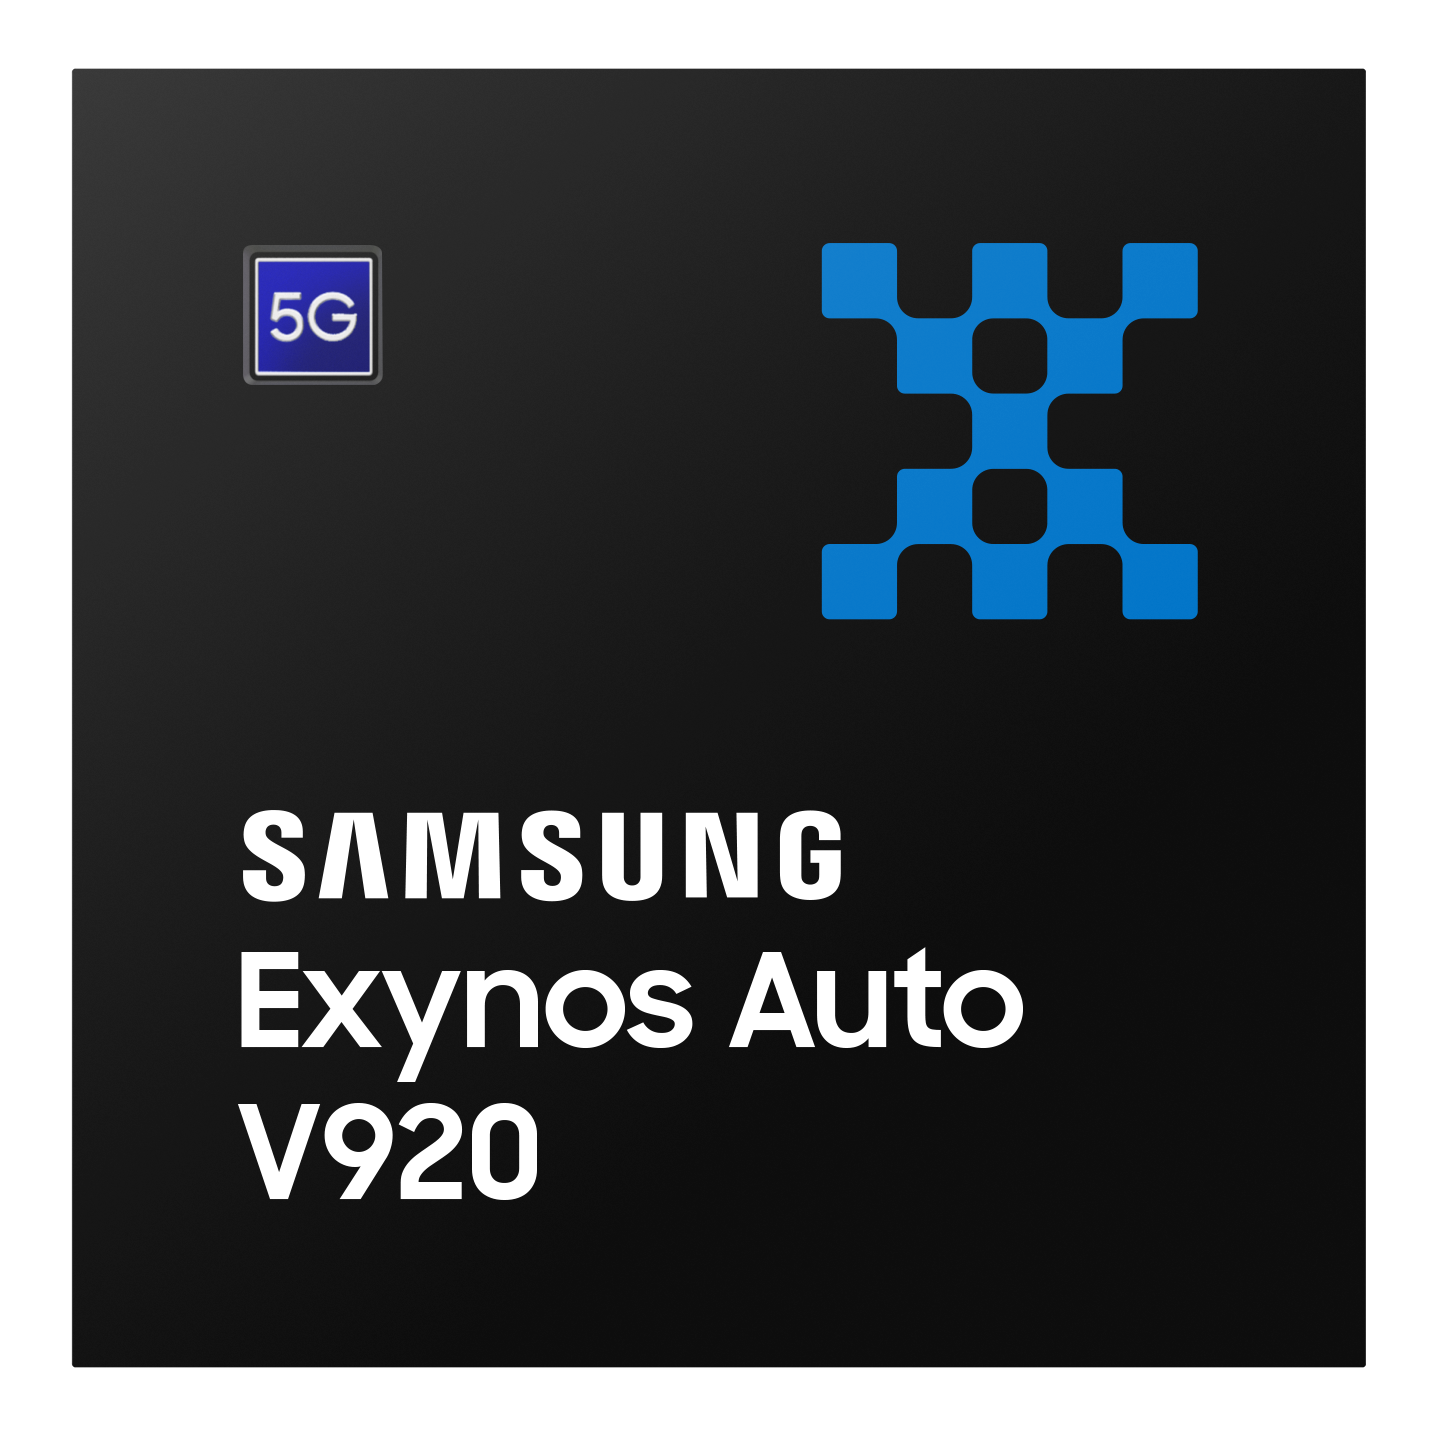 Procesor Samsung Exynos Auto V920 dla systemów informacyjno-rozrywkowych nowej generacji w samochodach Hyundai